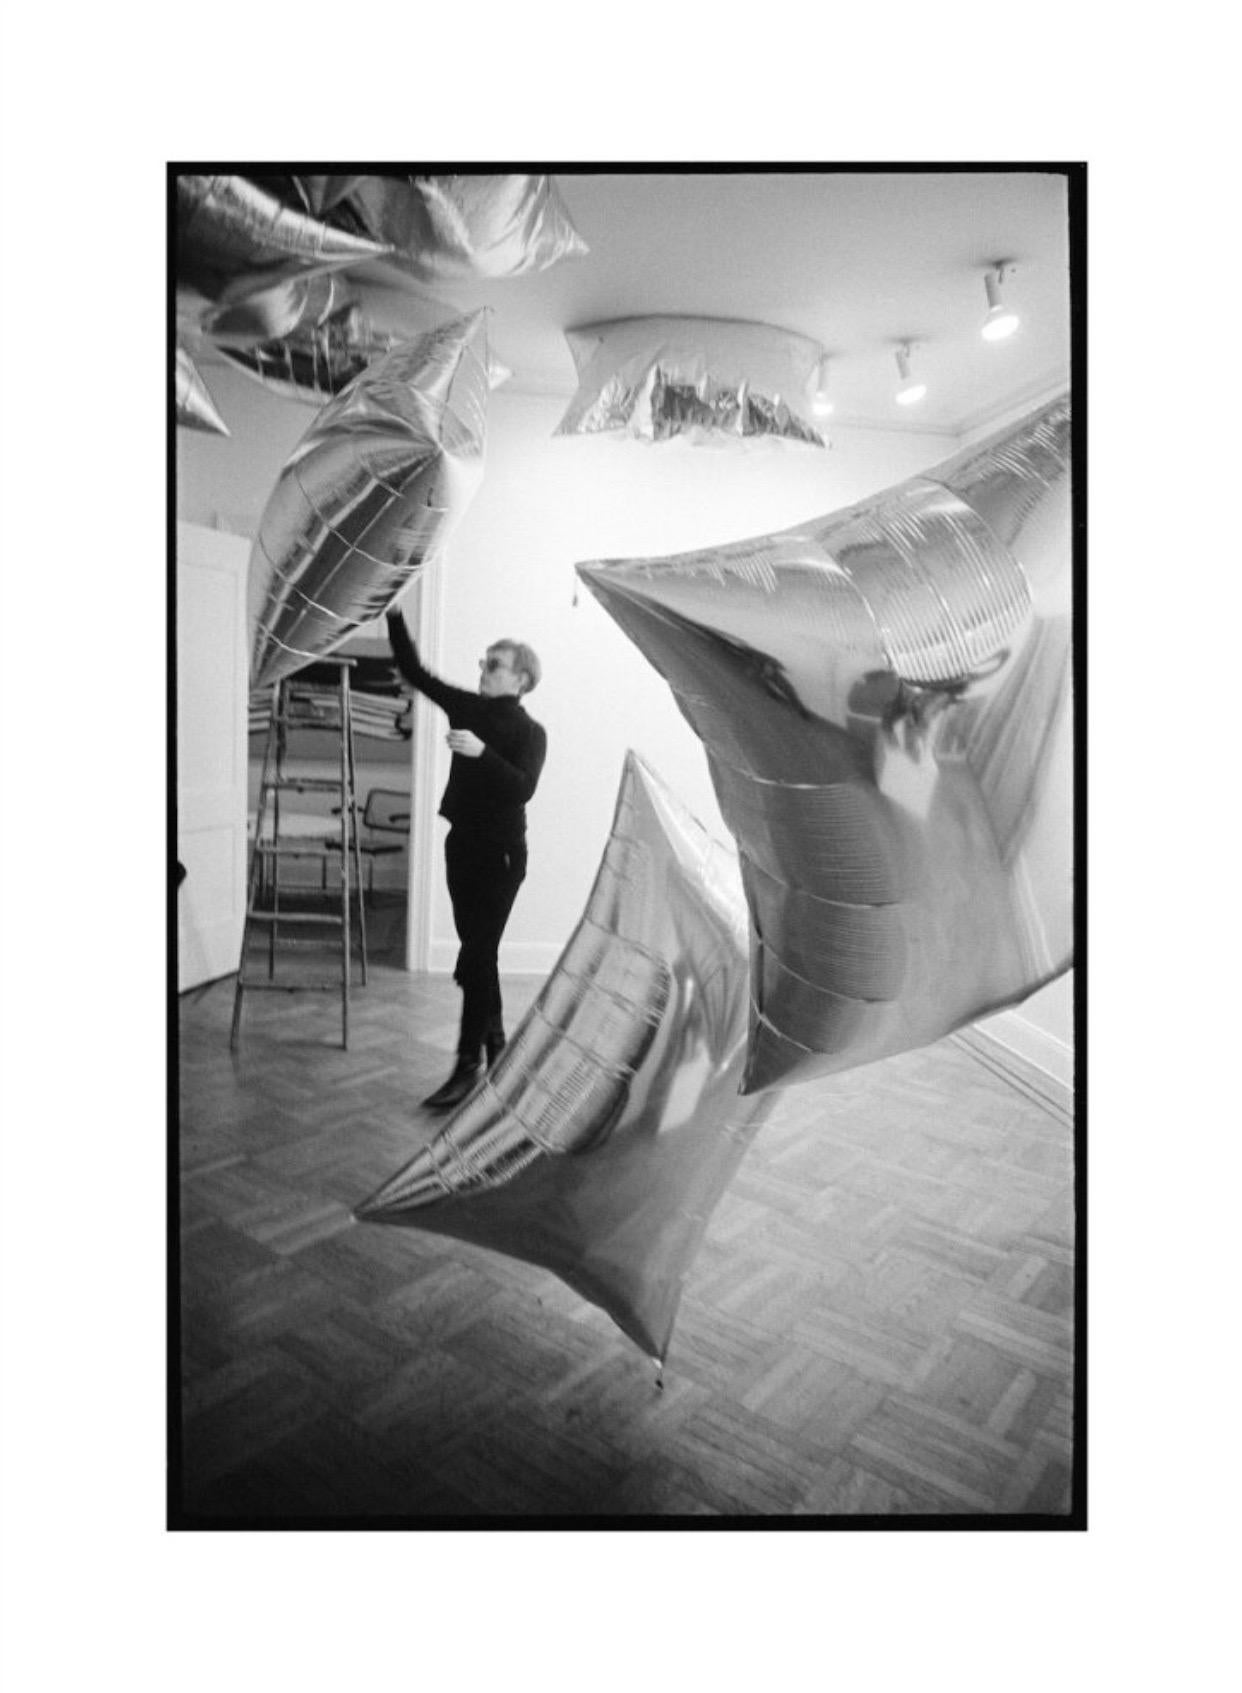 Nat Finkelstein, Silver Clouds Installation in der Leo Castelli Gallery, NYC, 1966/2020

Andy Warhol bereitet die erste Ausstellung seiner Installation "Silver Clouds" in der Leo Castelli Gallery, New York 1966 vor

Bildgröße: 40 x 60cm